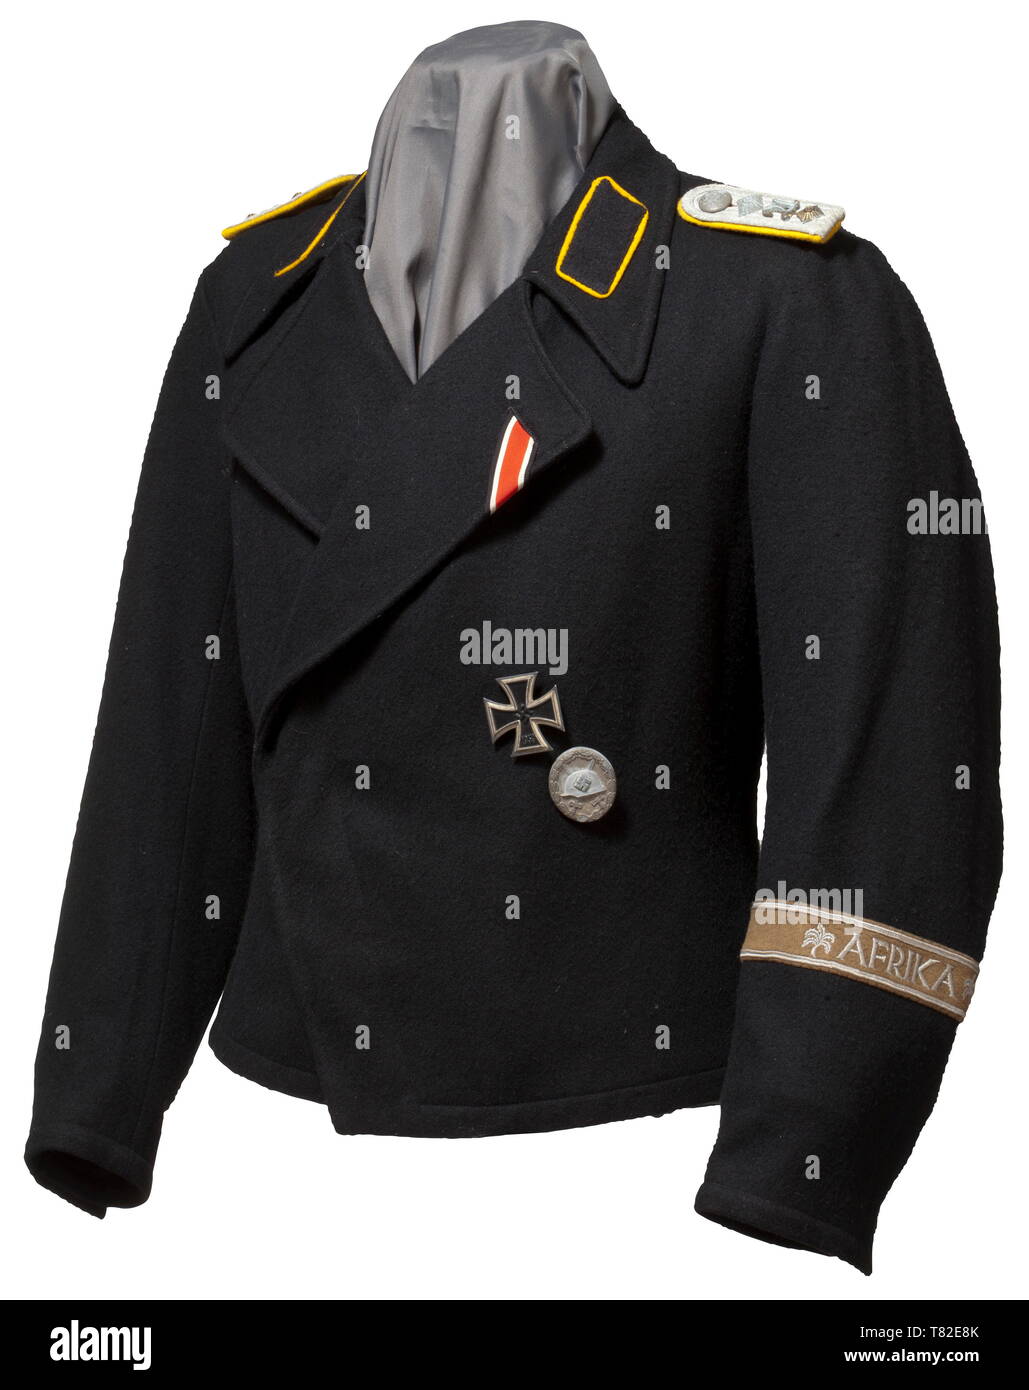 Una chaqueta M 43 para unidades de reconocimiento - ropa especial para tropas Panzer chaqueta de algodón negro material para un capitán de reconocimiento blindado, el interior con cocheras y estampados de tamaño así como RB-number. Resina Sintética Negra botones (uno perdido), el National Eagle faltantes, signos evidentes de uso. Los parches de cuello y hombro con placas de color amarillo-oro de tuberías, aplica el rango de estrellas y 'A' para el Aufklärung (reconocimiento) de las unidades. Adjunta a la chaqueta son una cruz de hierro de primera clase de 1939, una medalla de plata de la herida, la cinta de la cruz de hierro 2ª , Additional-Rights-Clearance-Info-Not-Available Foto de stock